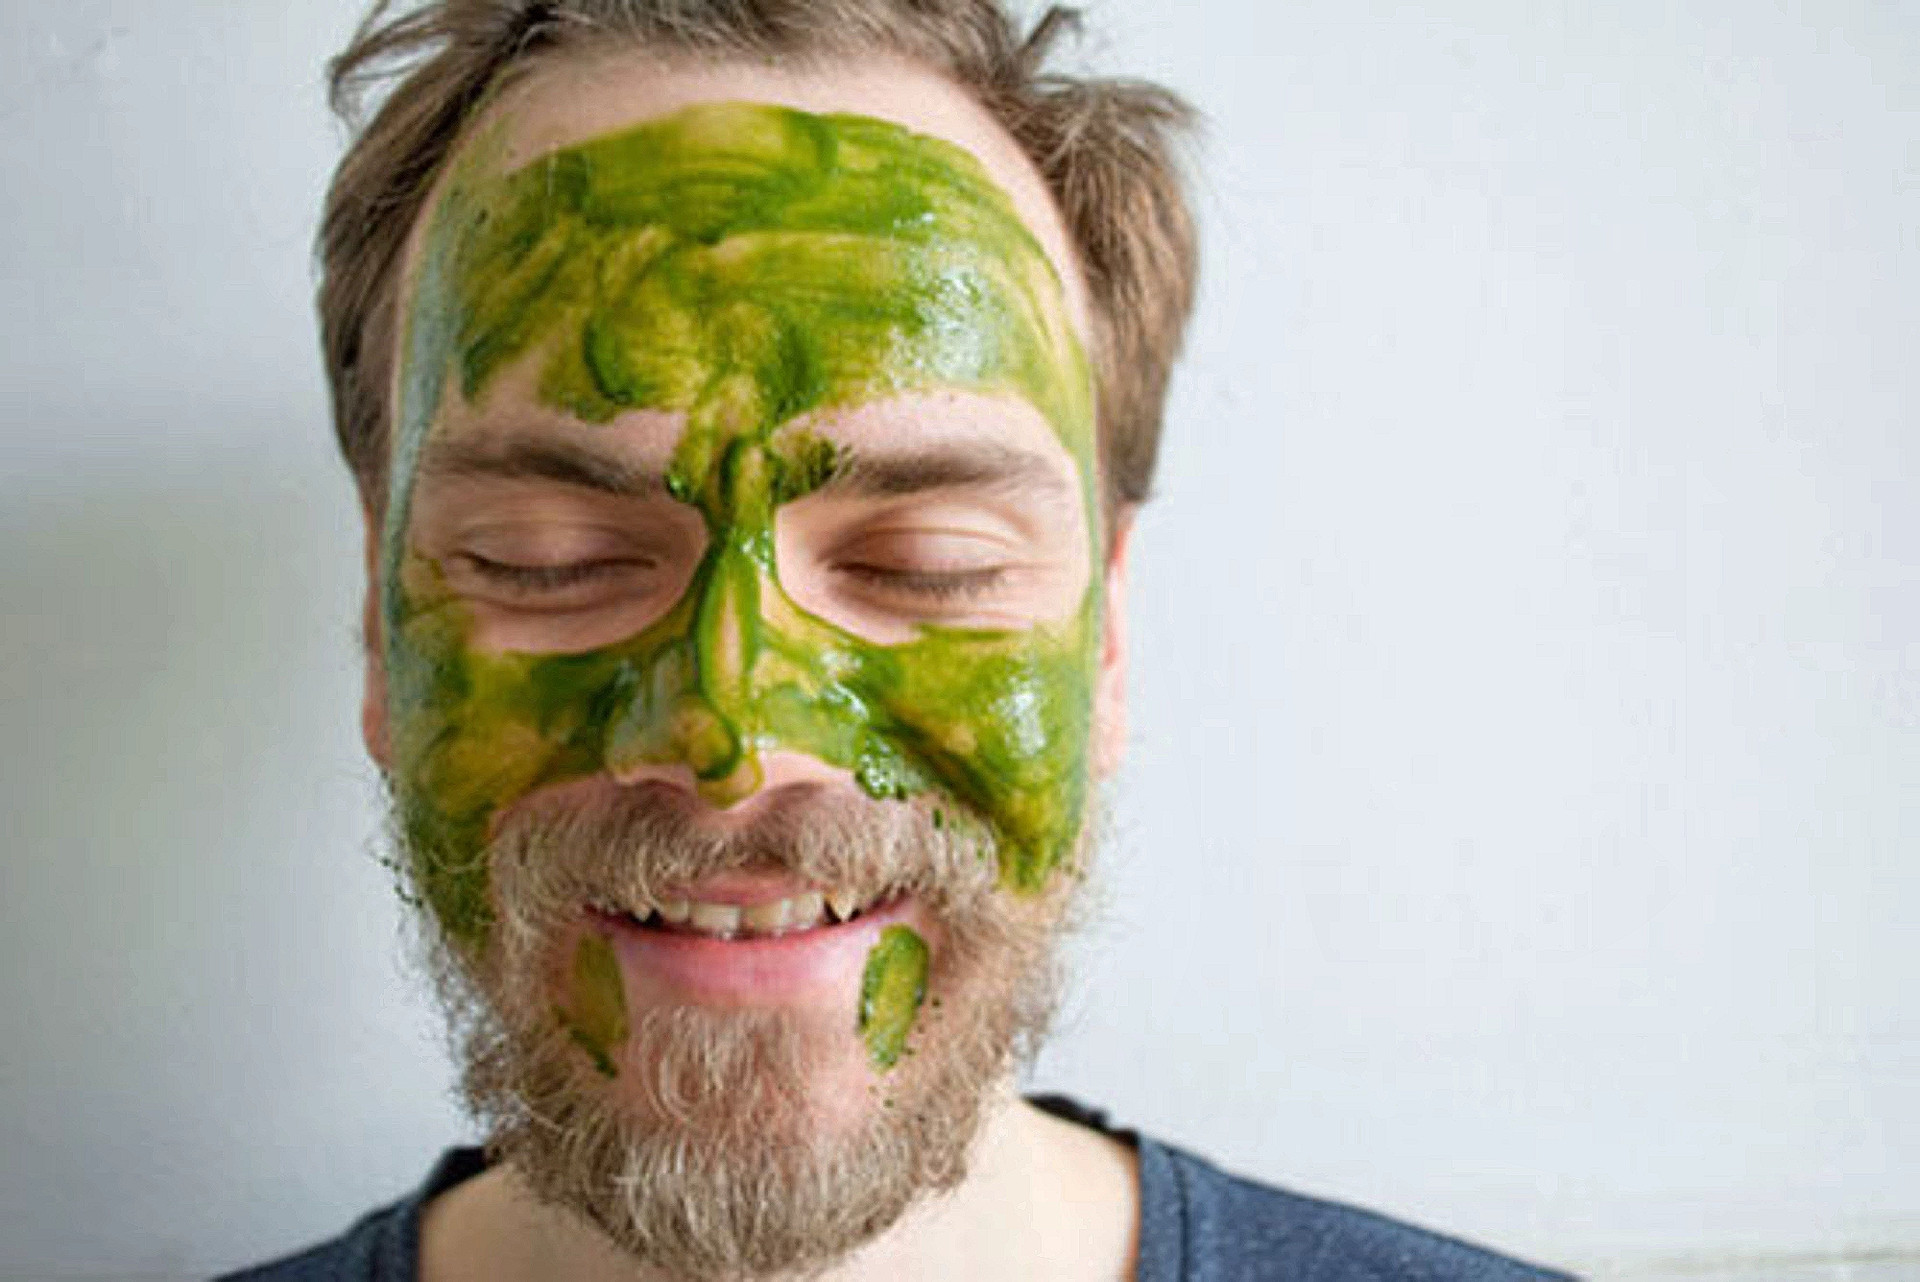 Художники Ник Космас, Мартин Такер и&nbsp;Битси Нокс произвели сорт маття, который предложили использовать в&nbsp;качестве маски из&nbsp;зеленого чая со&nbsp;следующей рекомендацией: «Если, смыв маску, вы заметите, что лицо стало чуть зеленее обычного, не&nbsp;паникуйте: просто смойте лишнюю “зелень” с&nbsp;помощью ватного диска и&nbsp;масла для лица или мягкой пенки».